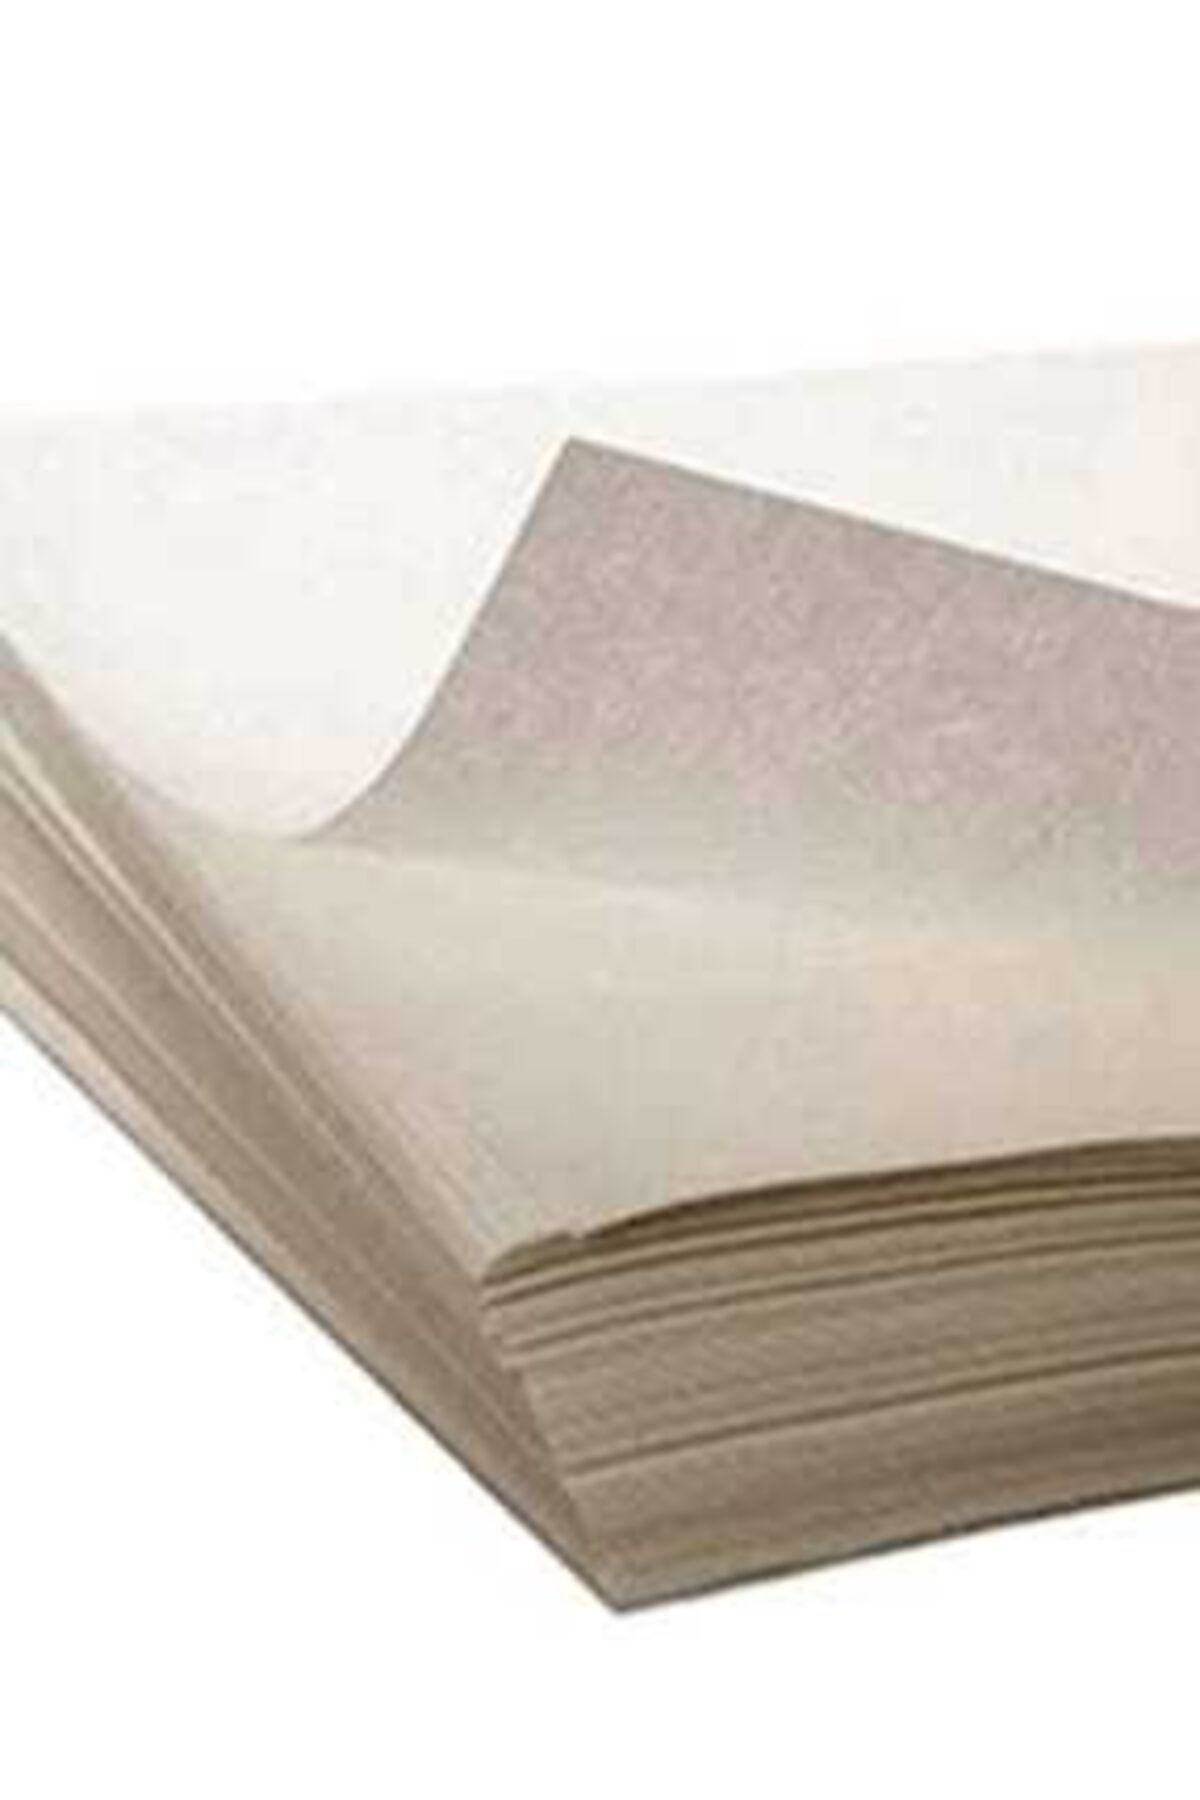 NUBA 40*60 Ölçü Ambalaj Ve Paketleme Seka Beyazı Gazete Kağıdı 1 Kg